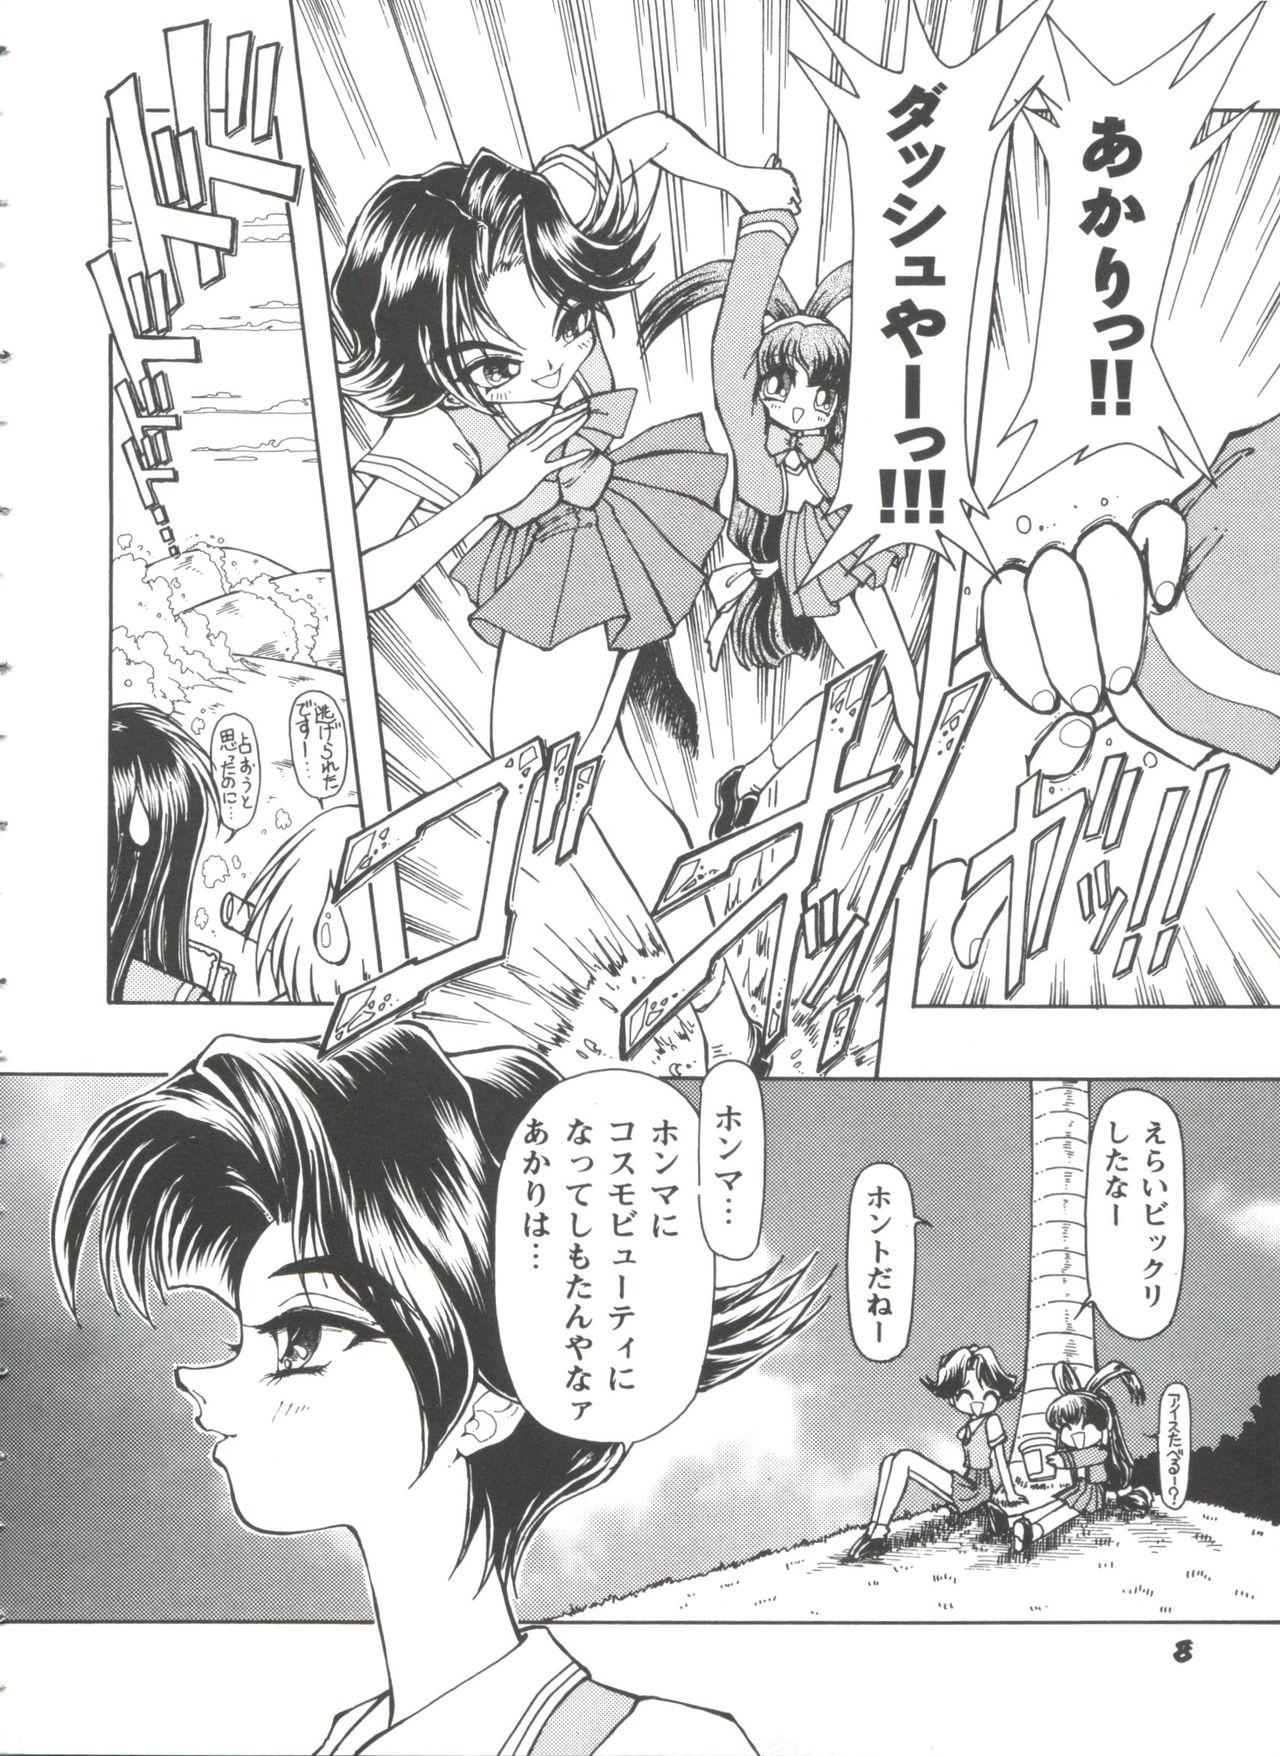 Pain Girl's Parade 98 Take 10 - Street fighter Darkstalkers Sakura taisen Battle athletes Akihabara dennou gumi Big Dildo - Page 9